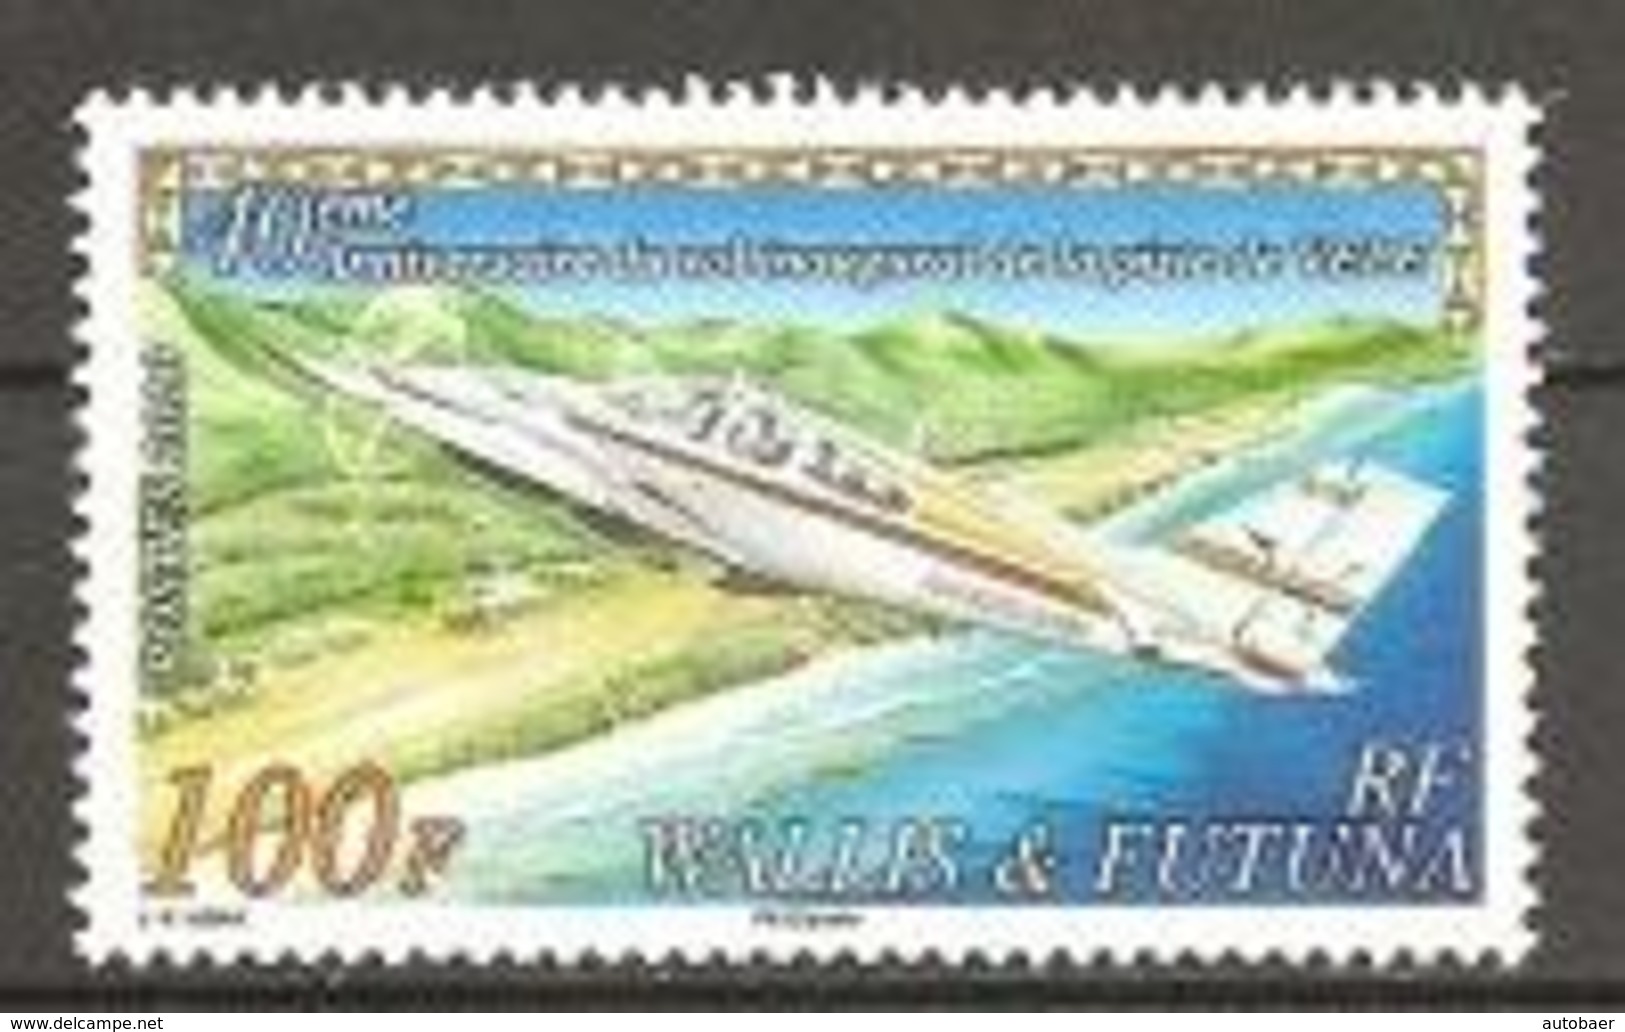 Wallis Und Et Futuna 2010 Aeroport Airport Flugplatz Vele Michel No. 1014 MNH Postfrisch Neuf - Nuevos